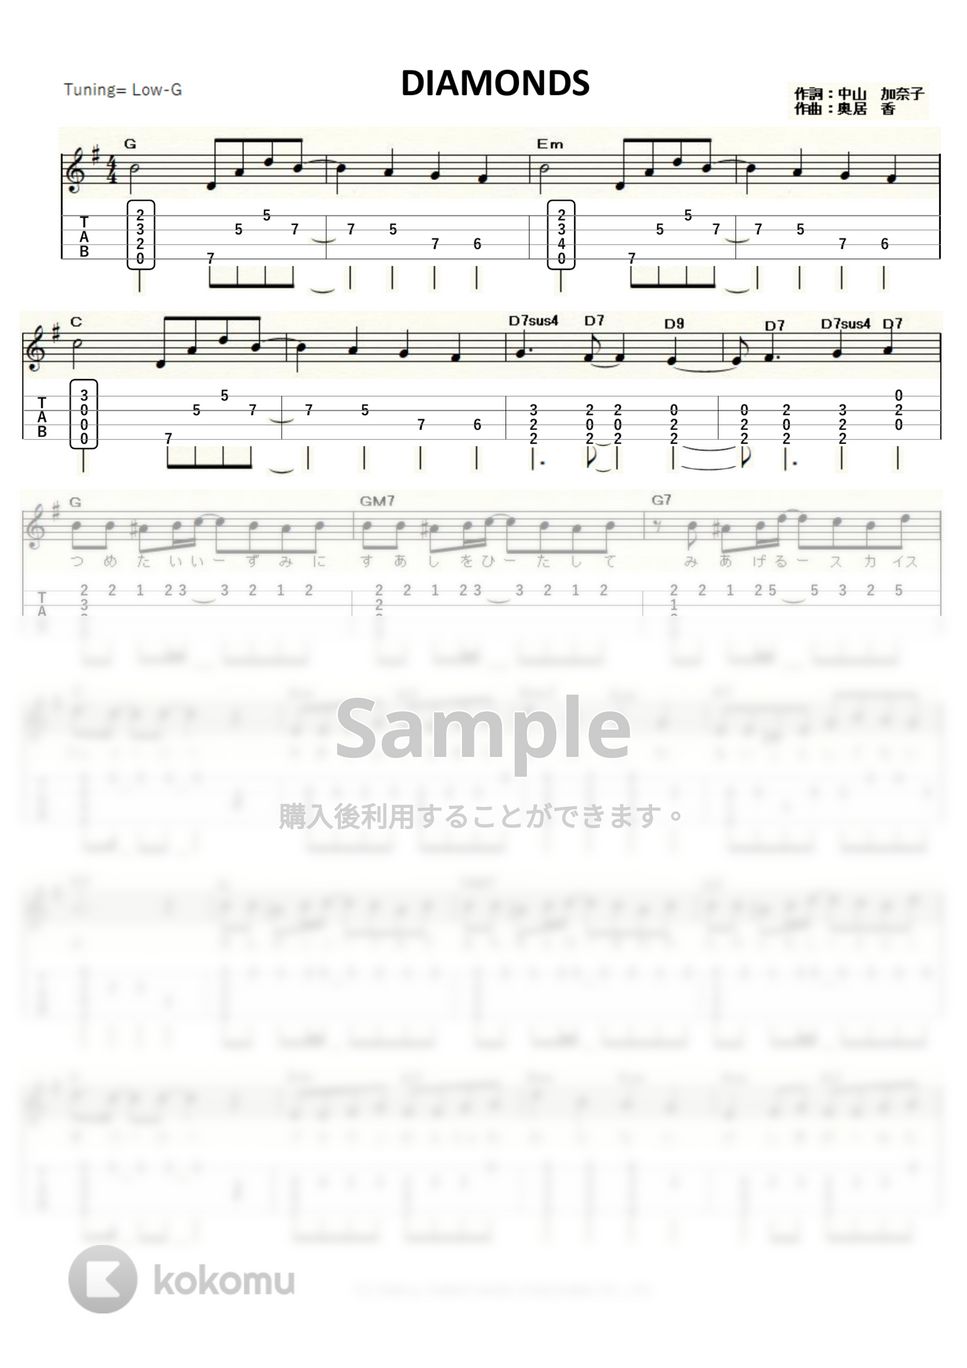 プリンセスプリンセス - DIAMONDS (Low-G) by ukulelepapa